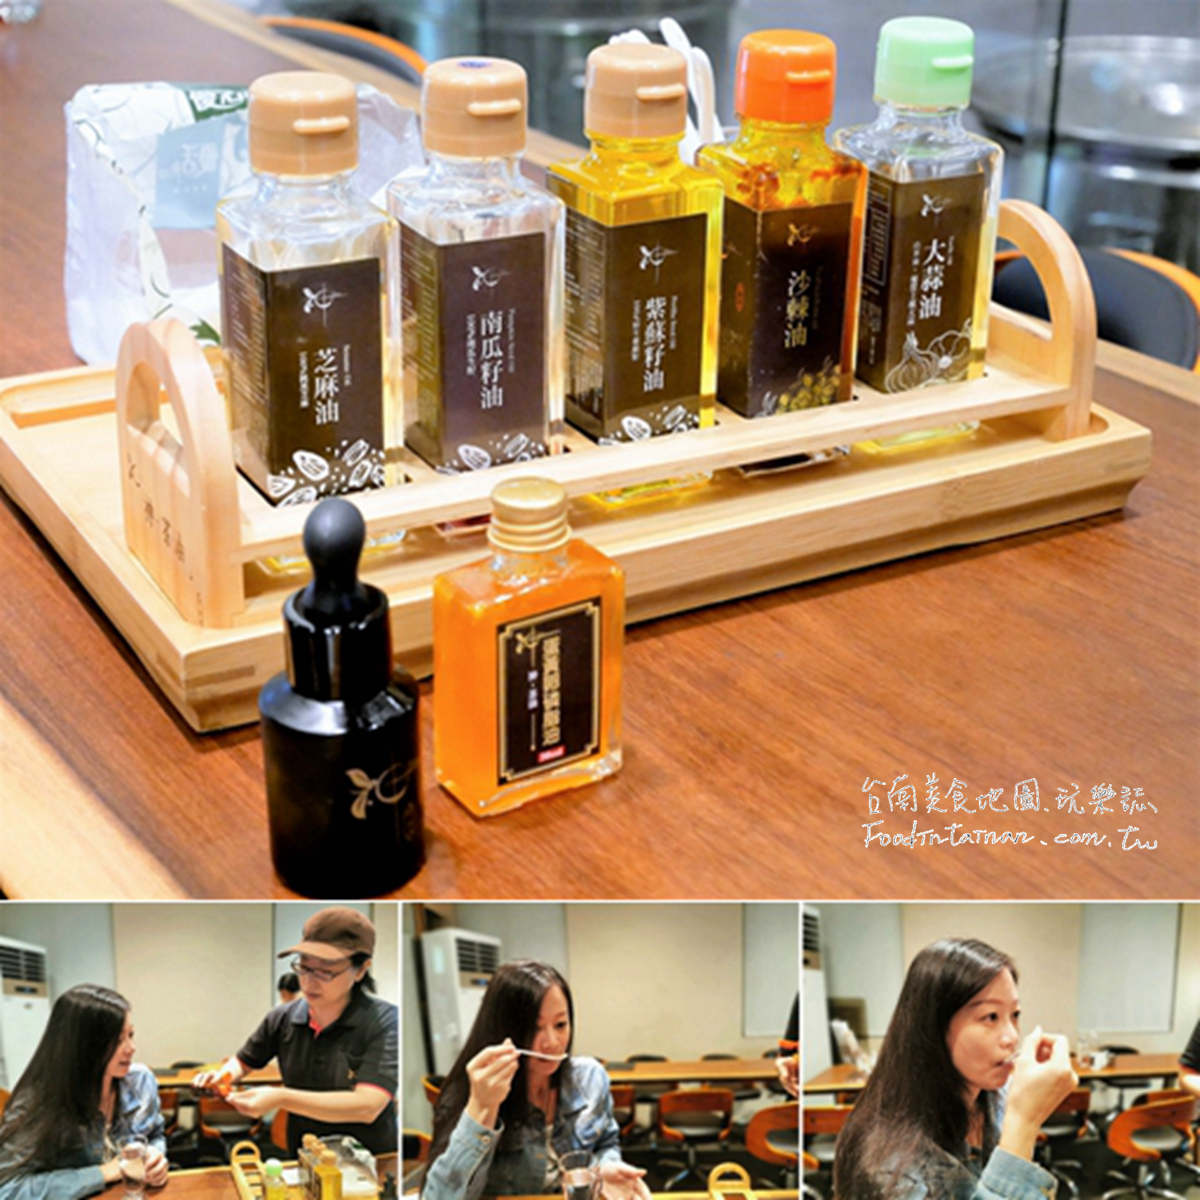 台南推薦獨家油品入菜的養生健康餐廳-神茶油 Shin Camellia Oil